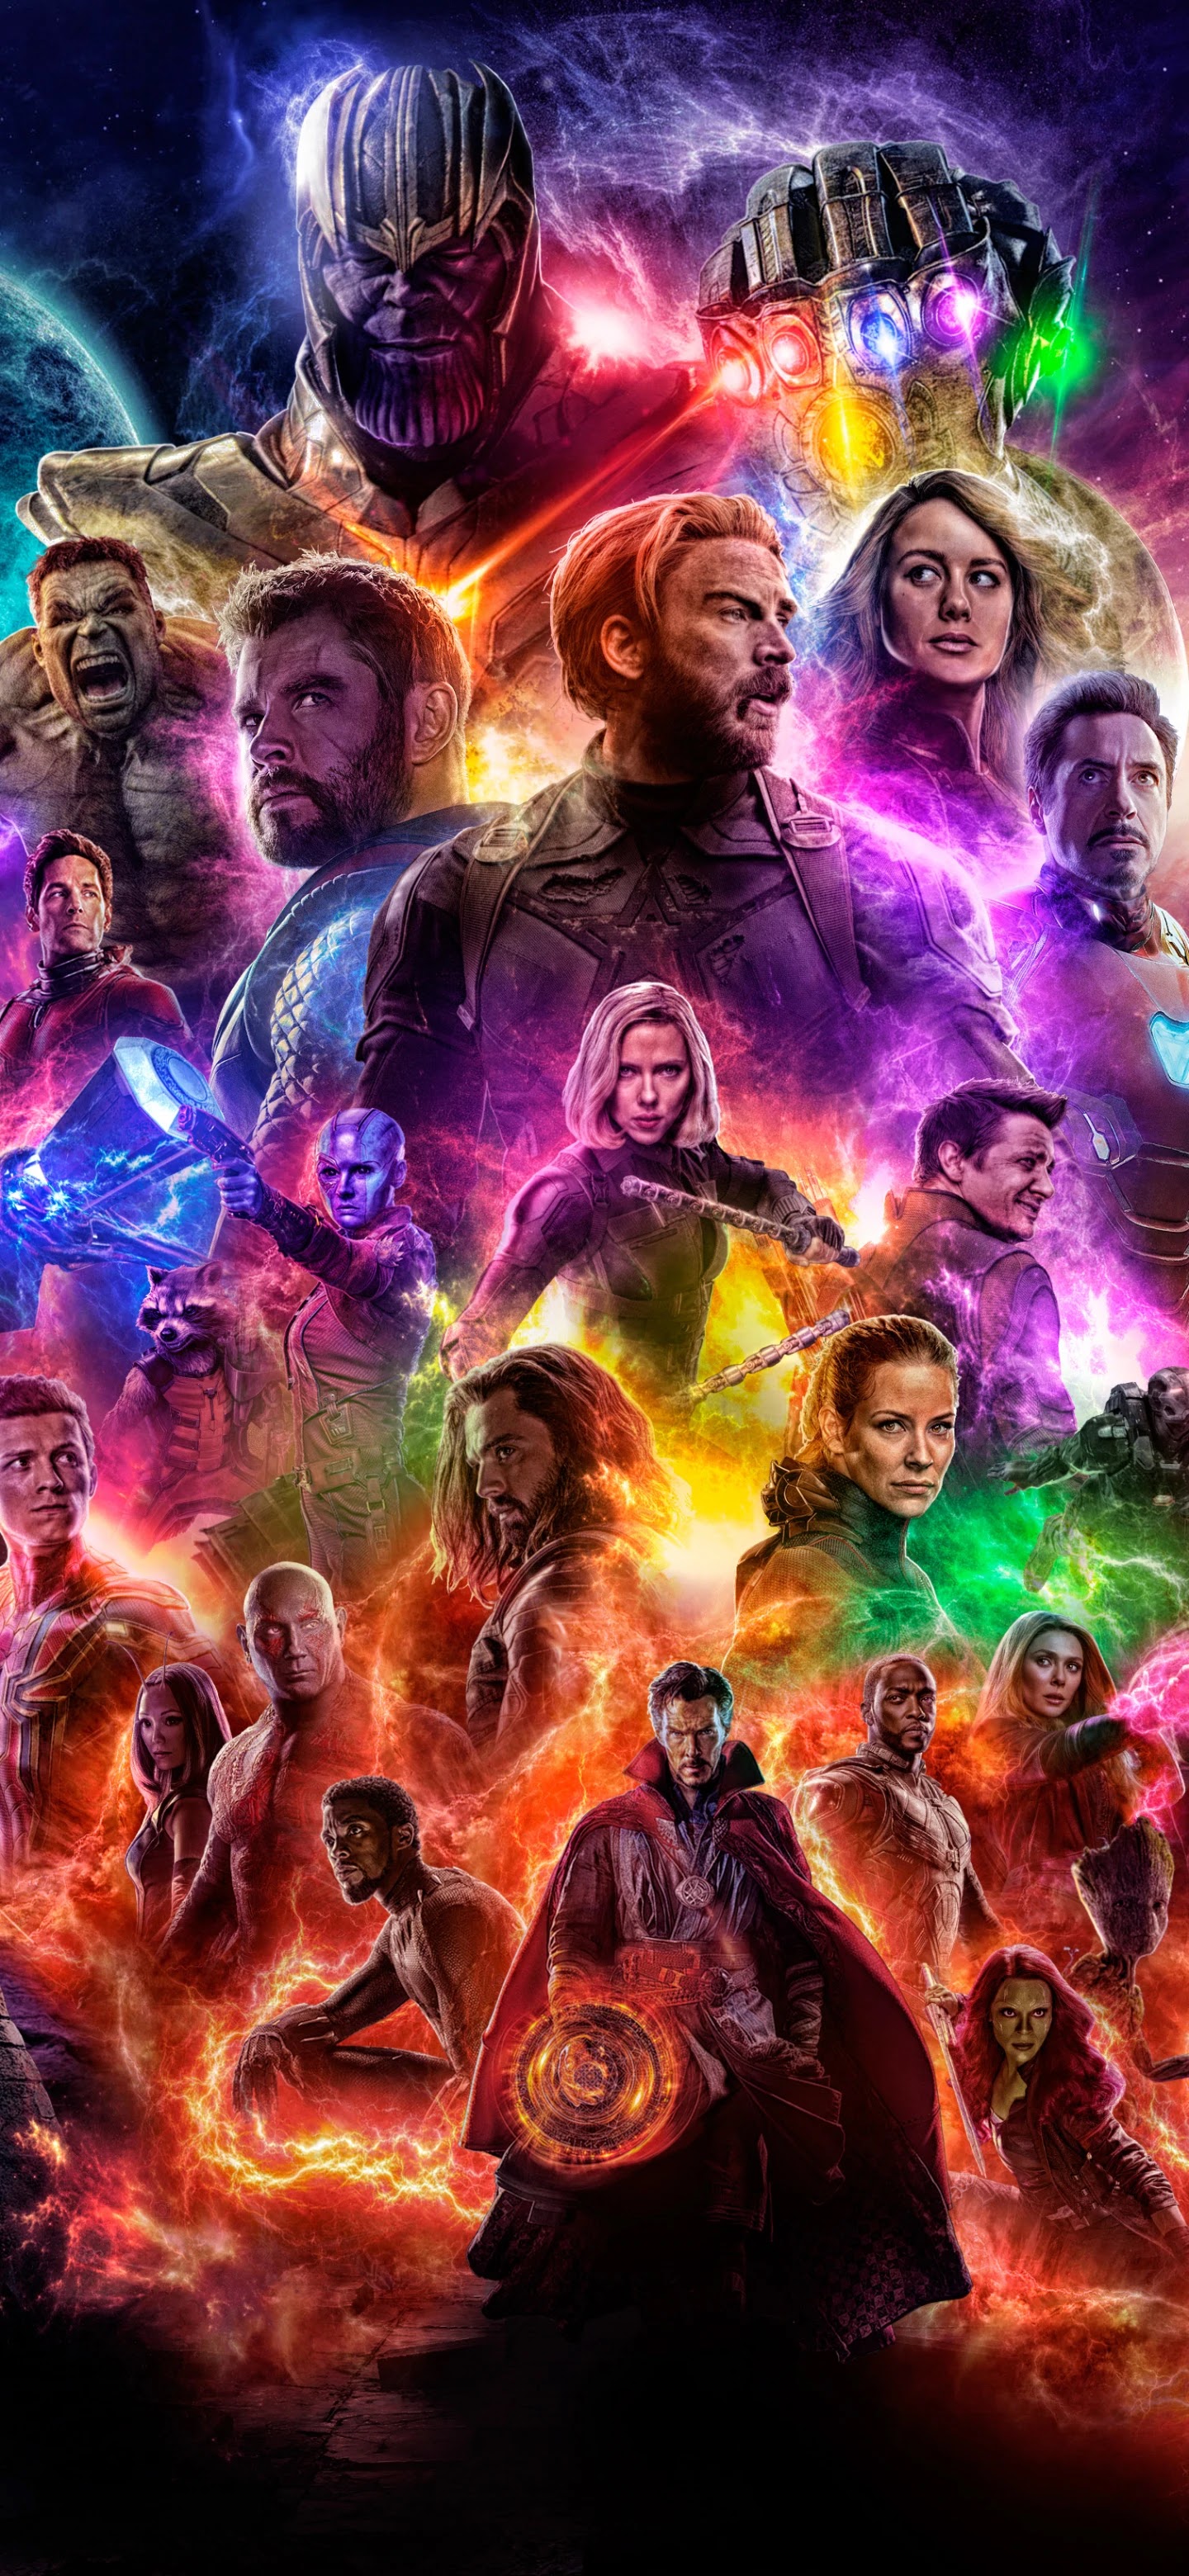 Avengers Endgame phone wallpaper - Movie - ponselwallpaper